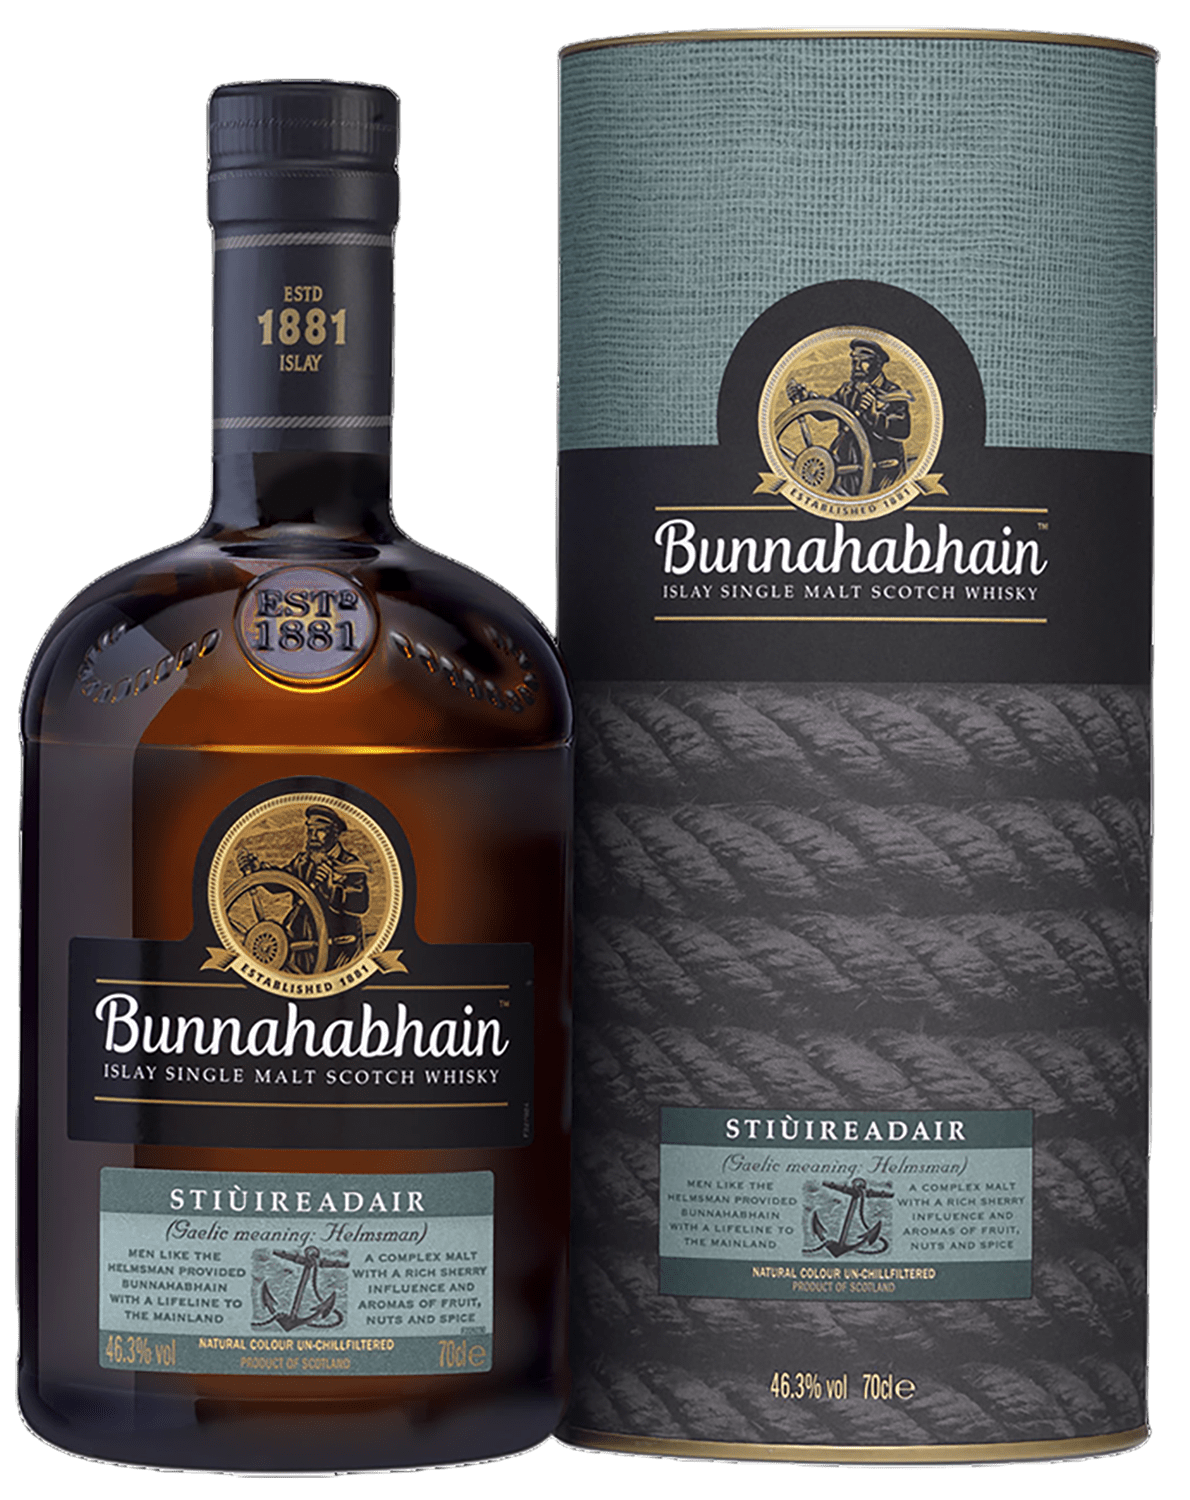 Bunnahabhain Stiuireadair Islay Single Malt Scotch Whisky (gift box) laphroaig select islay single malt scotch whisky gift box